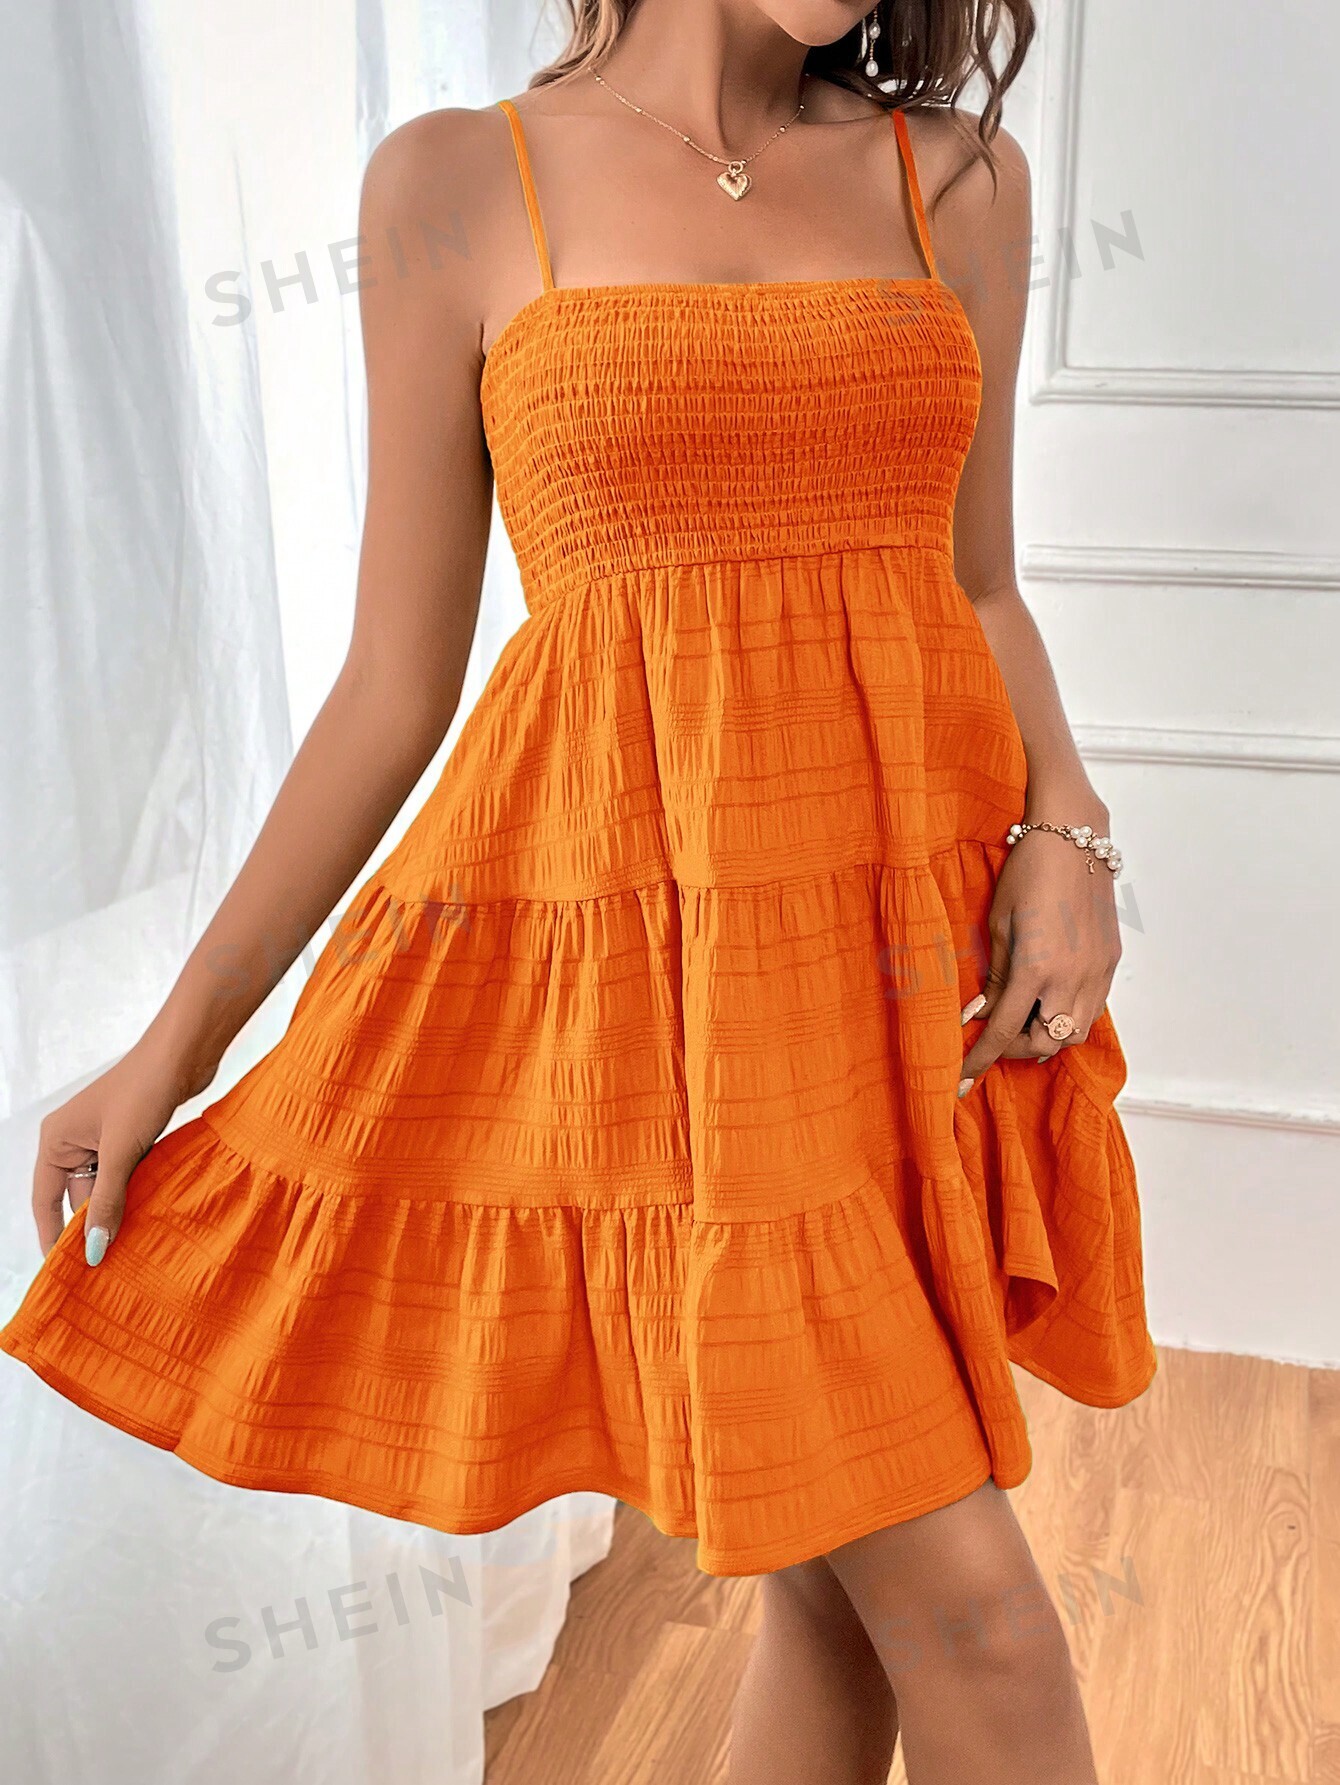 SHEIN WYWH Женское однотонное платье на тонких бретельках с оборками и подолом, апельсин